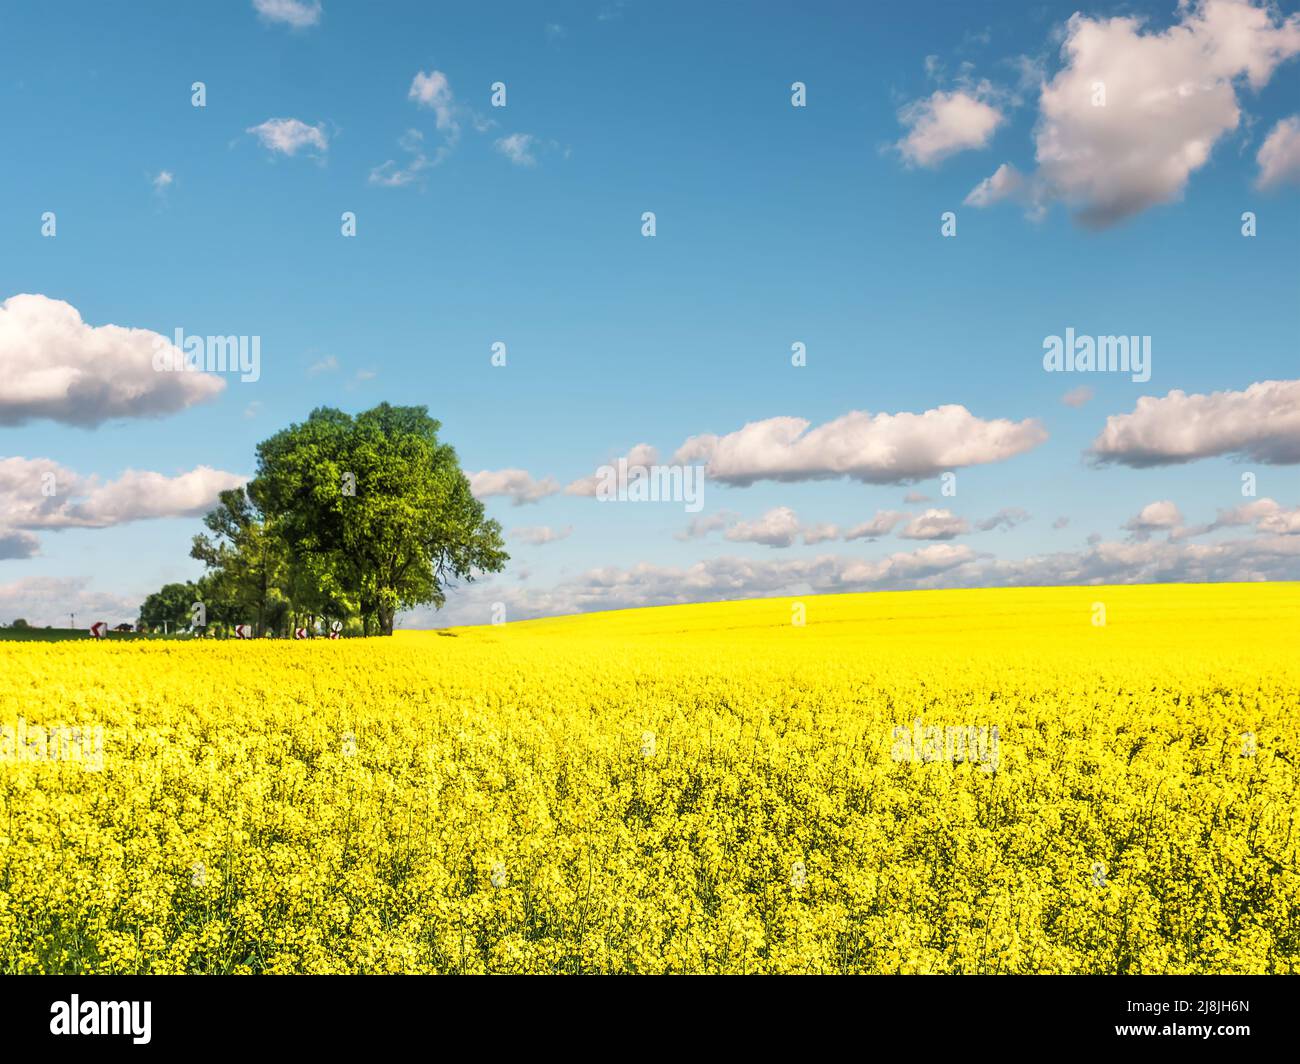 Schönes kultiviertes Feld mit gelben Rapsblüten an einem sonnigen Tag Stockfoto